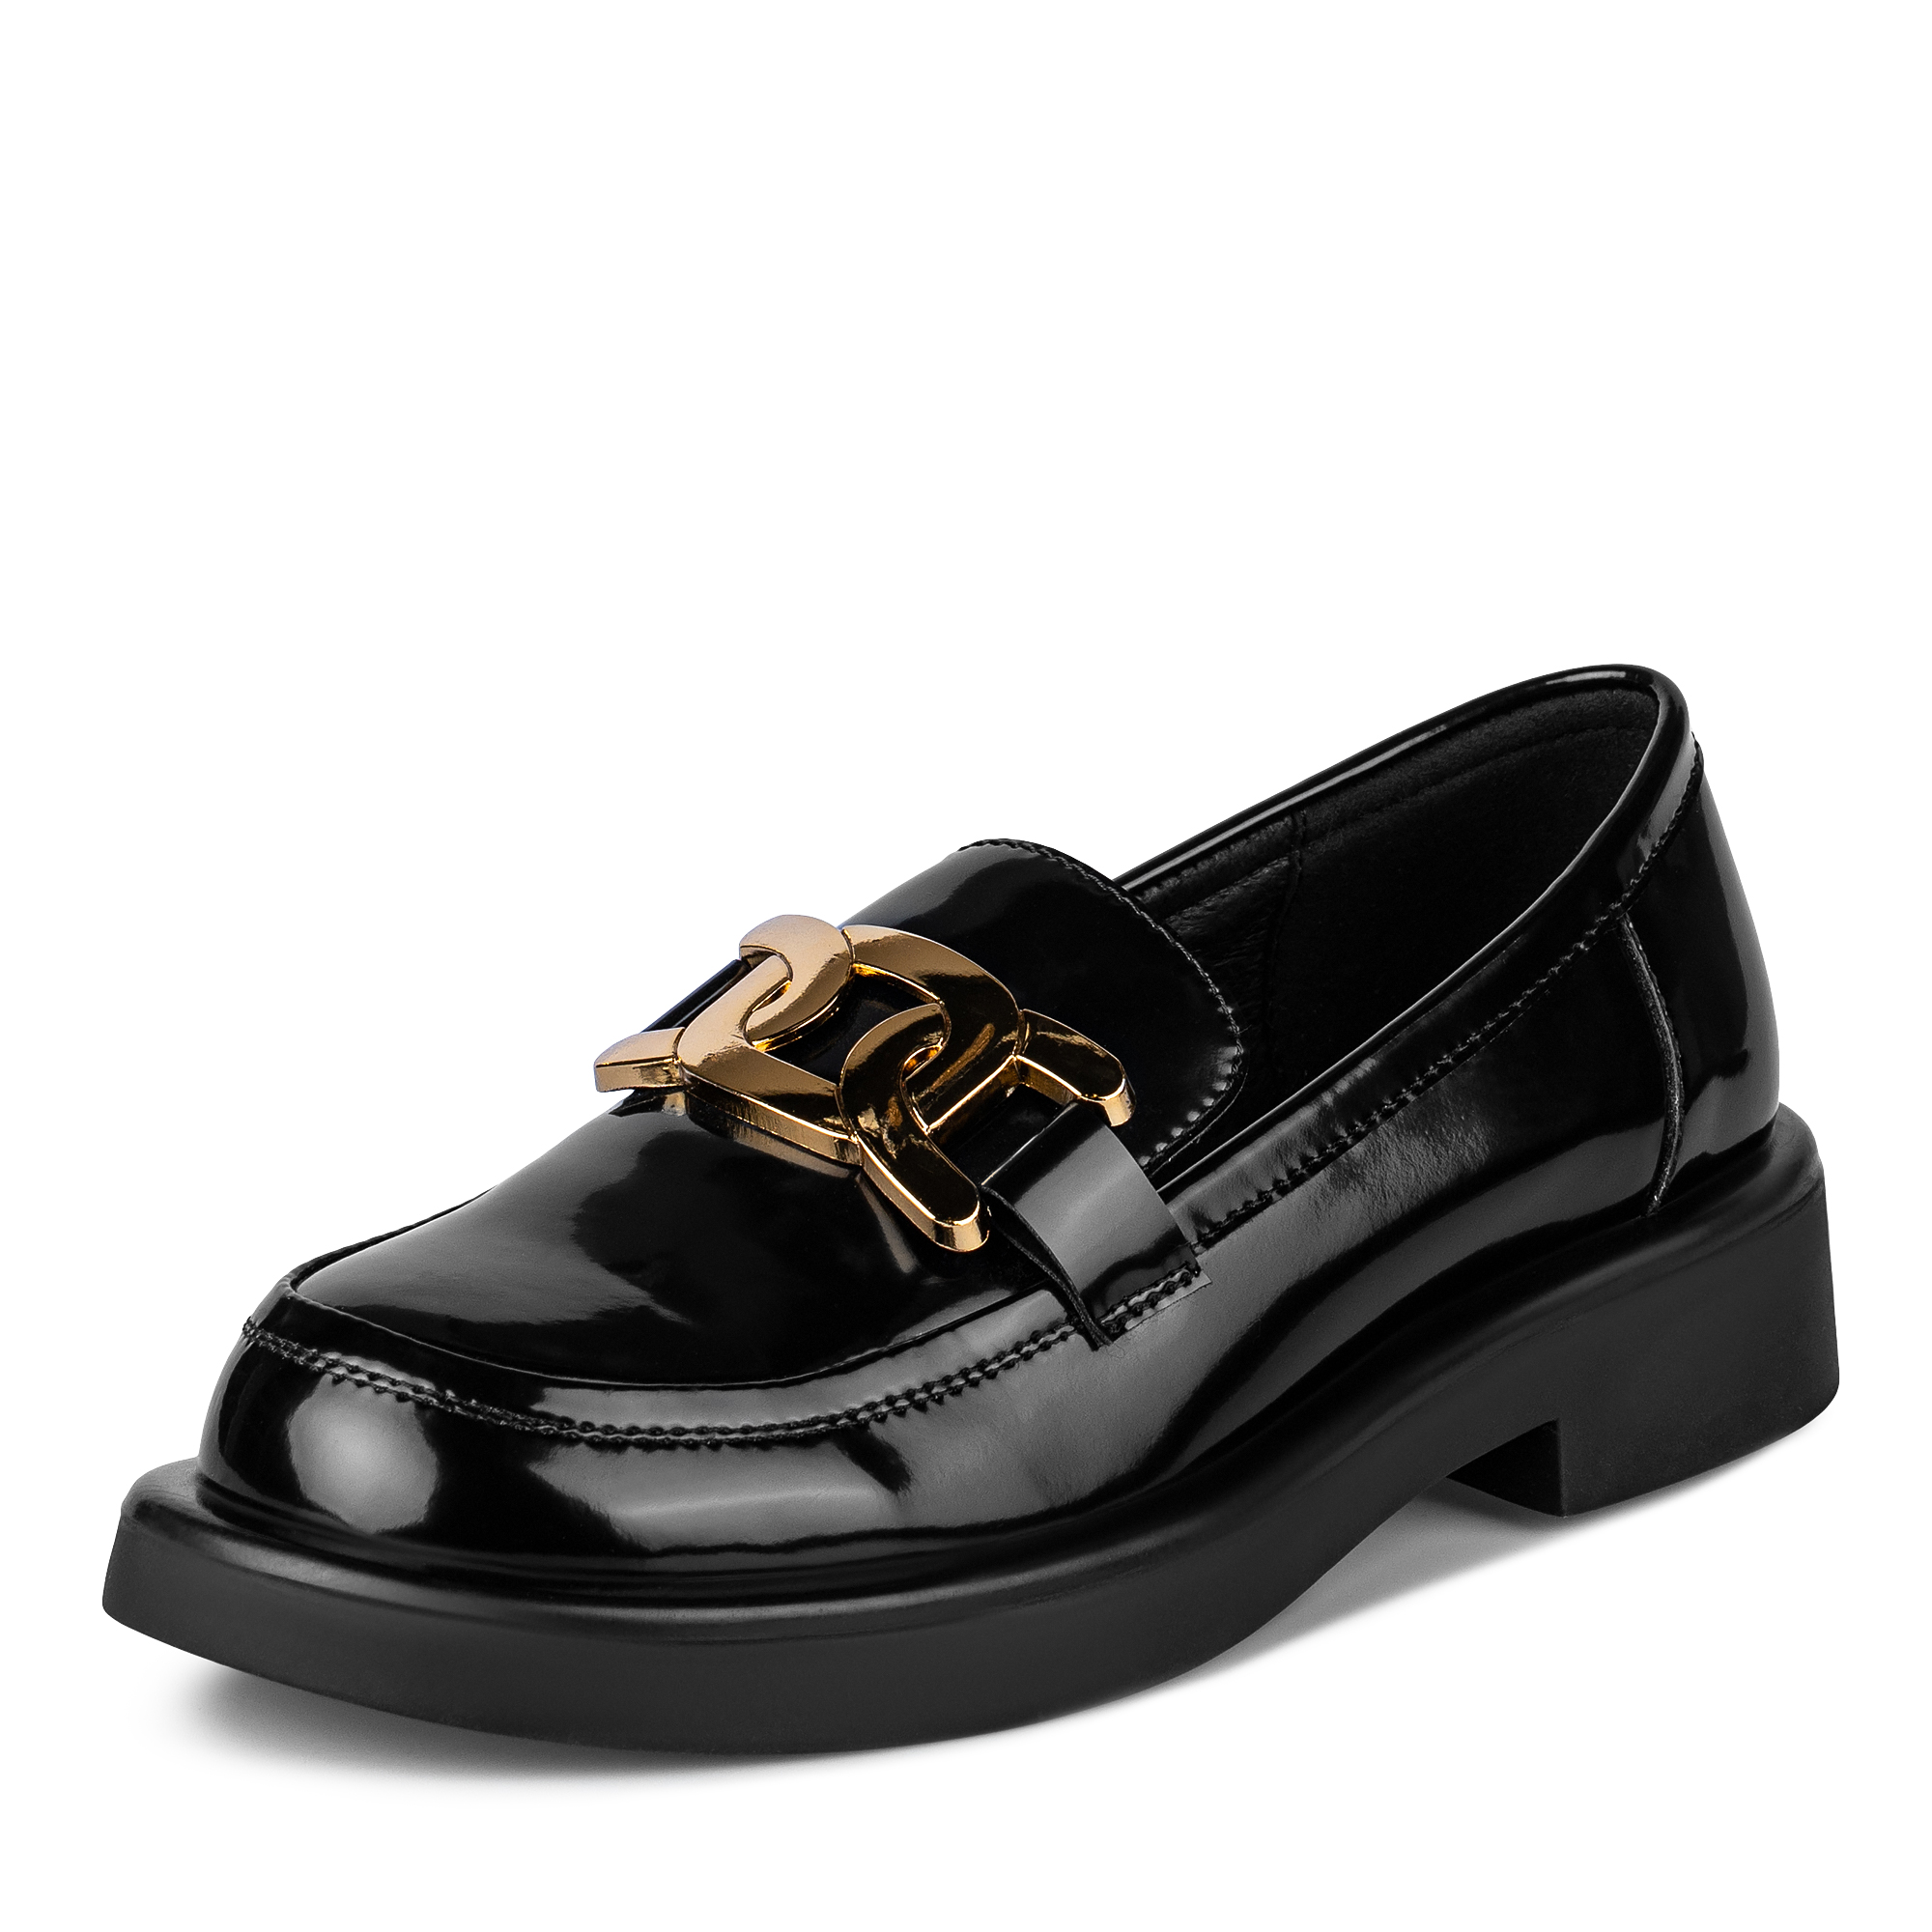 Туфли Thomas Munz 234-323A-1602, цвет черный, размер 37 - фото 2